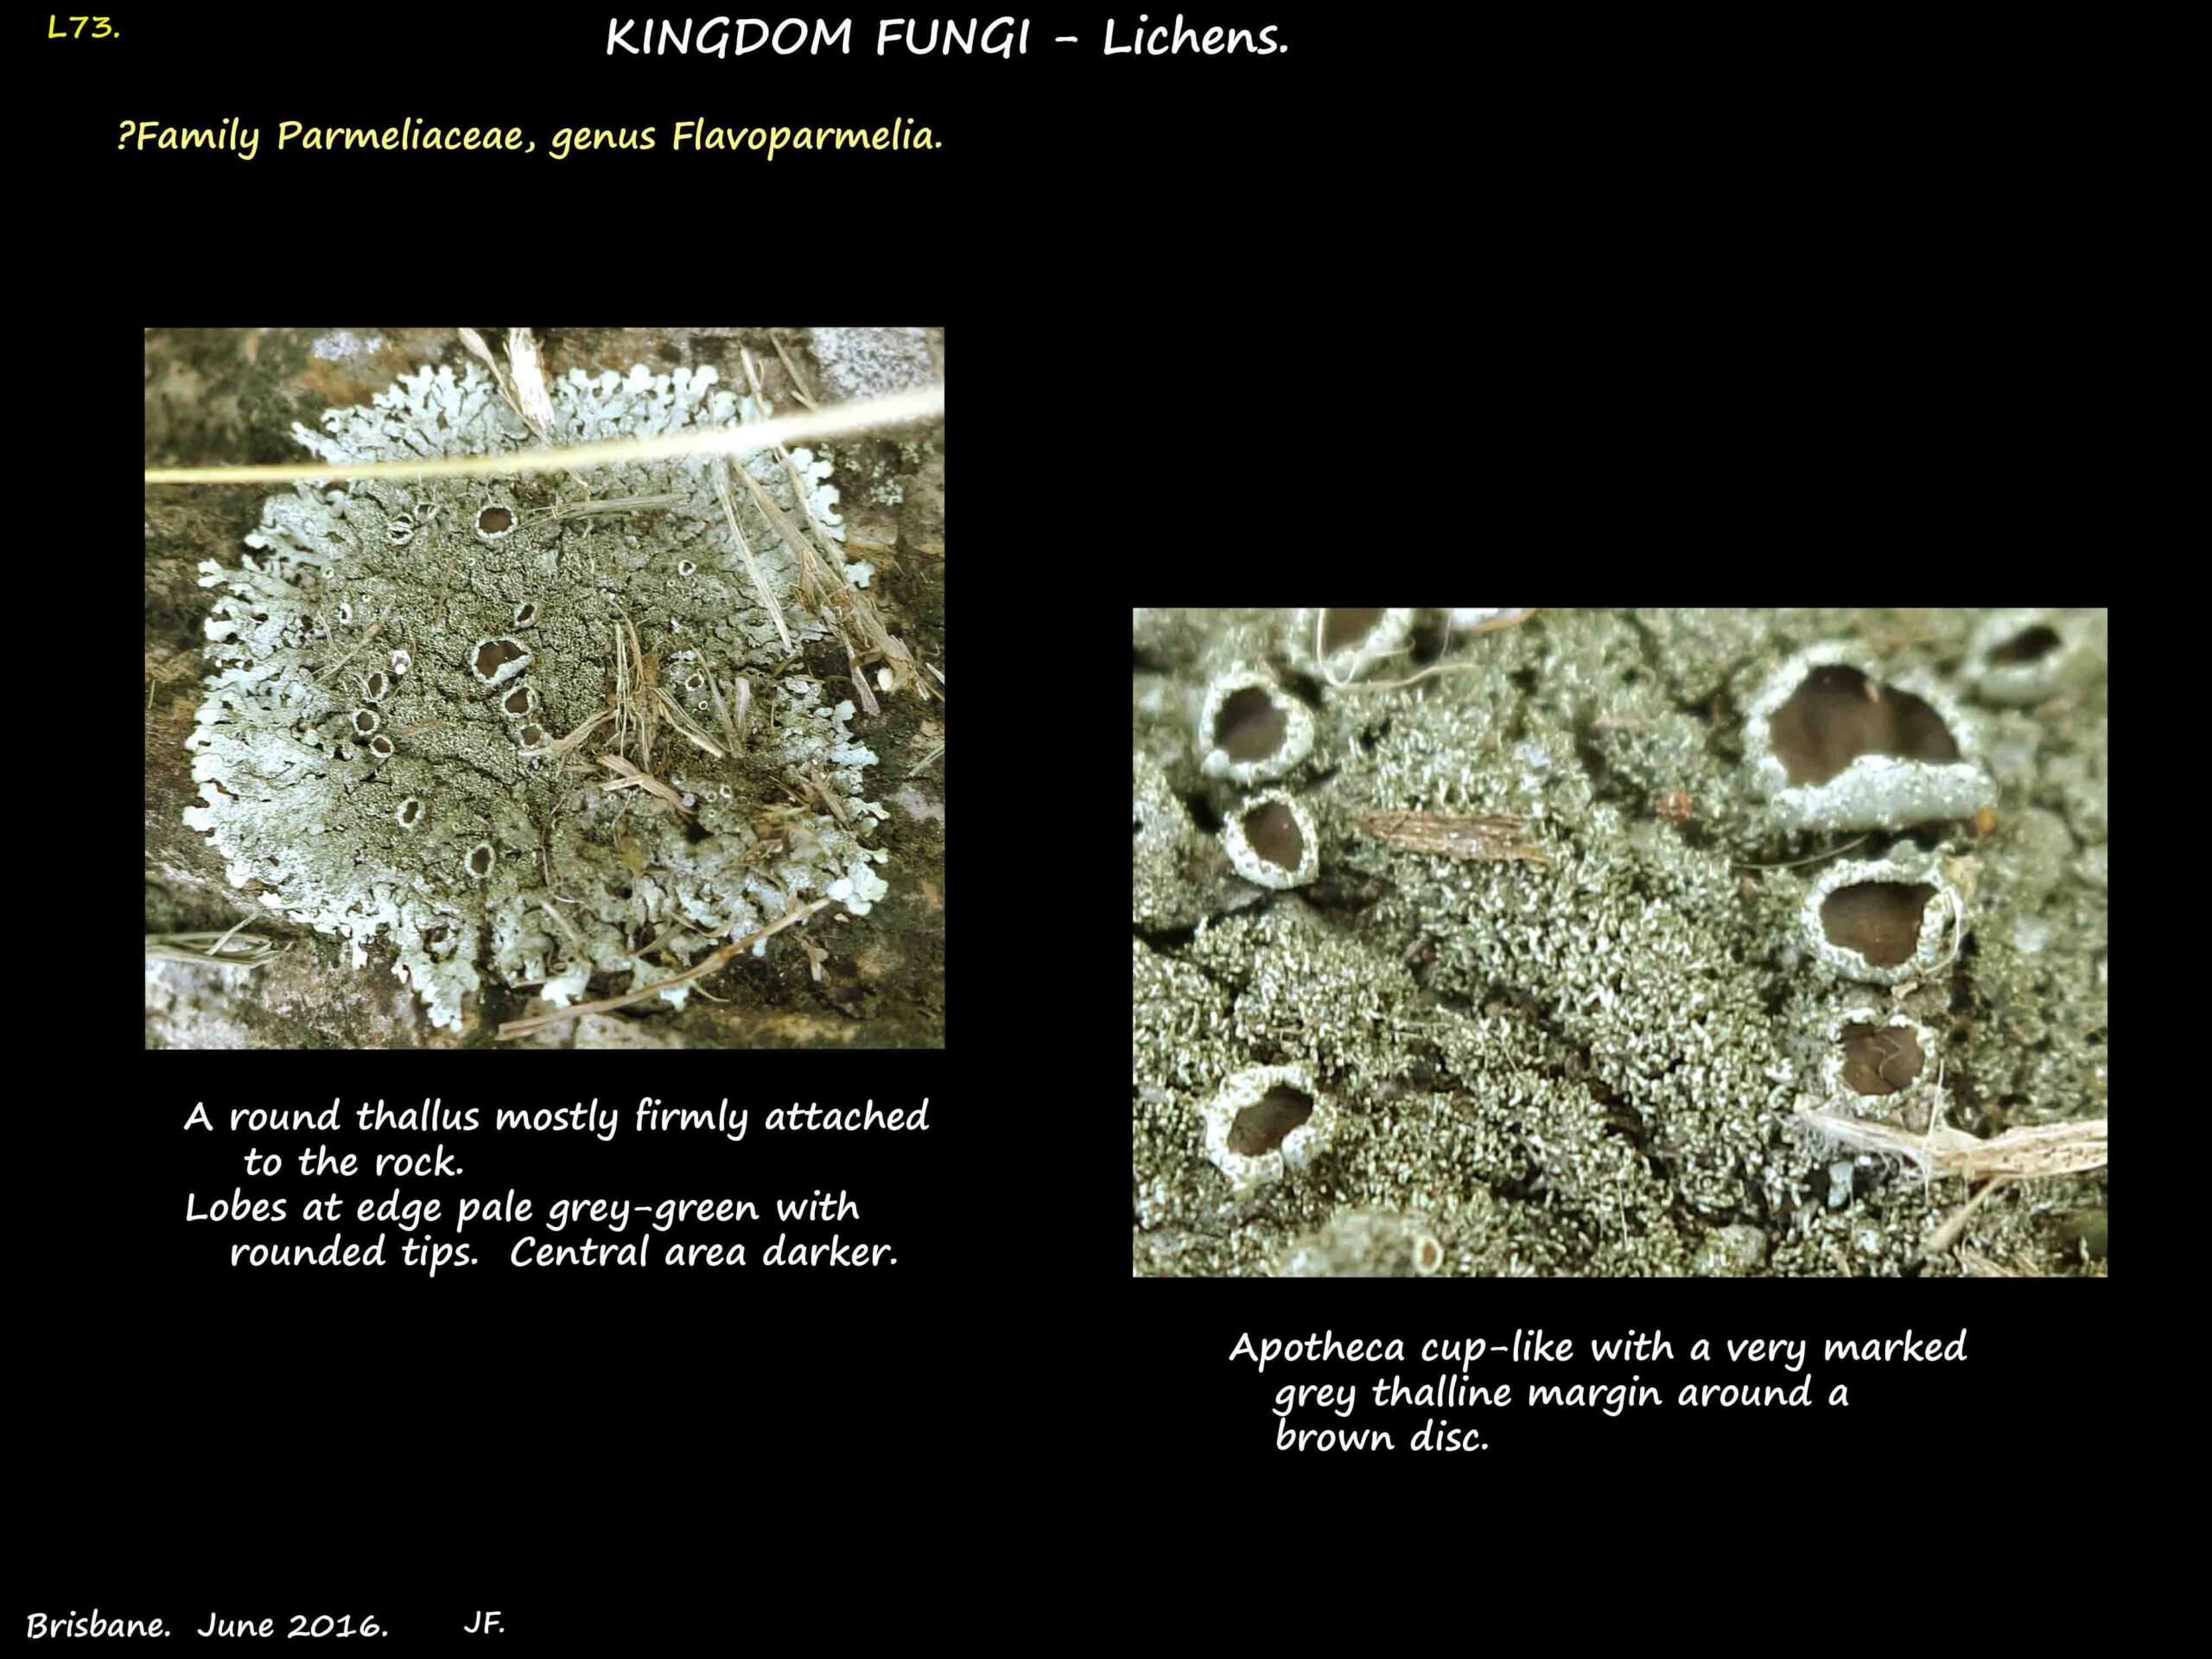 Possibly a Flavoparmelia lichen